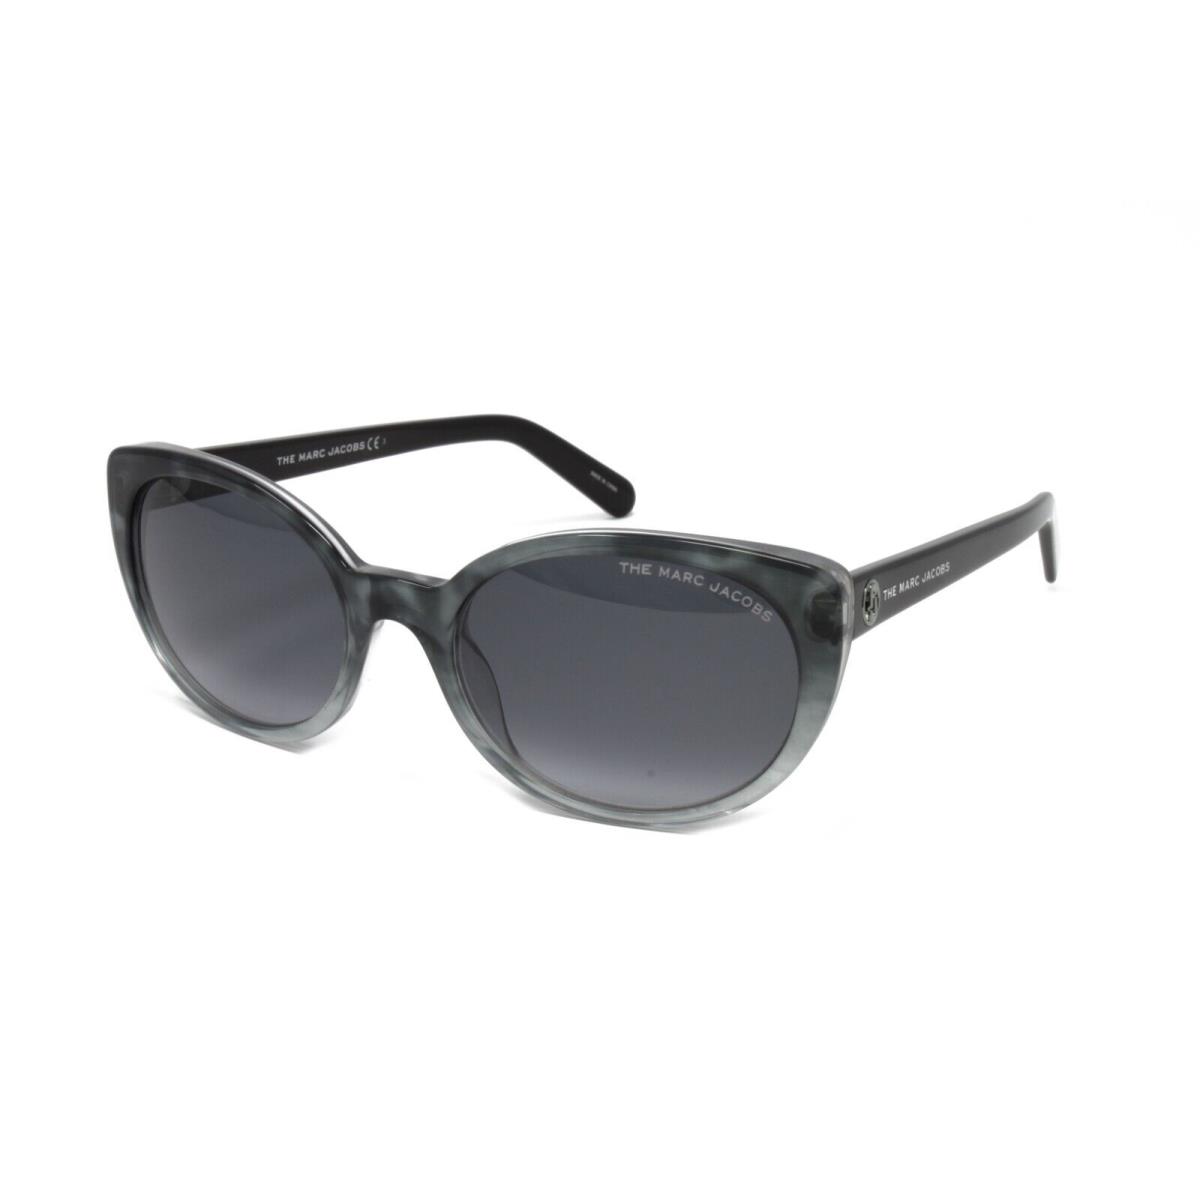 The Marc Jacobs Women`s Cat-eye Sunglasses Marc 525/S AB8 Havana Grey 55mm - Frame: Gray, Lens: Gray